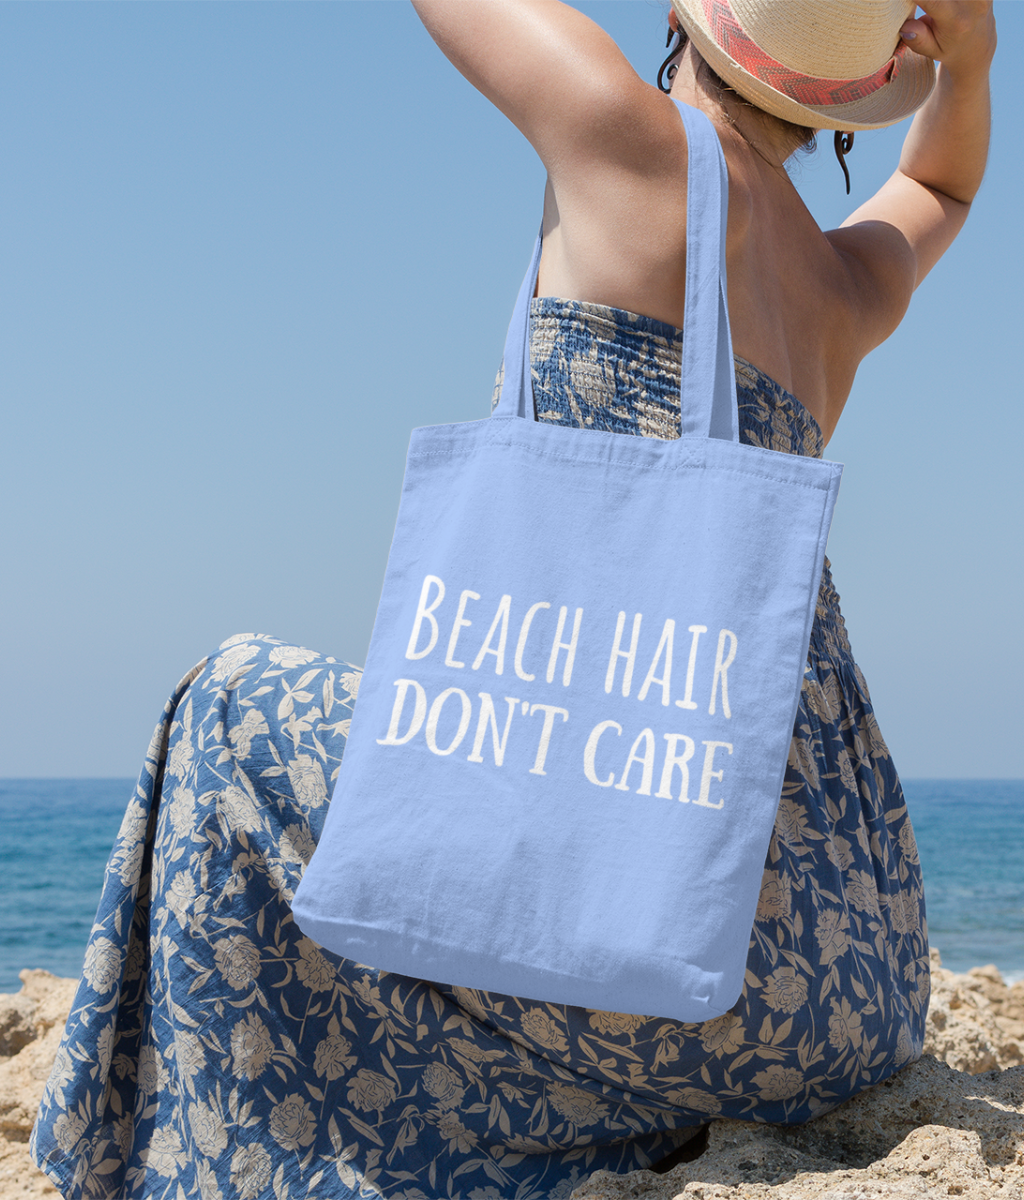 Beach Hair Don't Care Organic Cotton Tote Bag